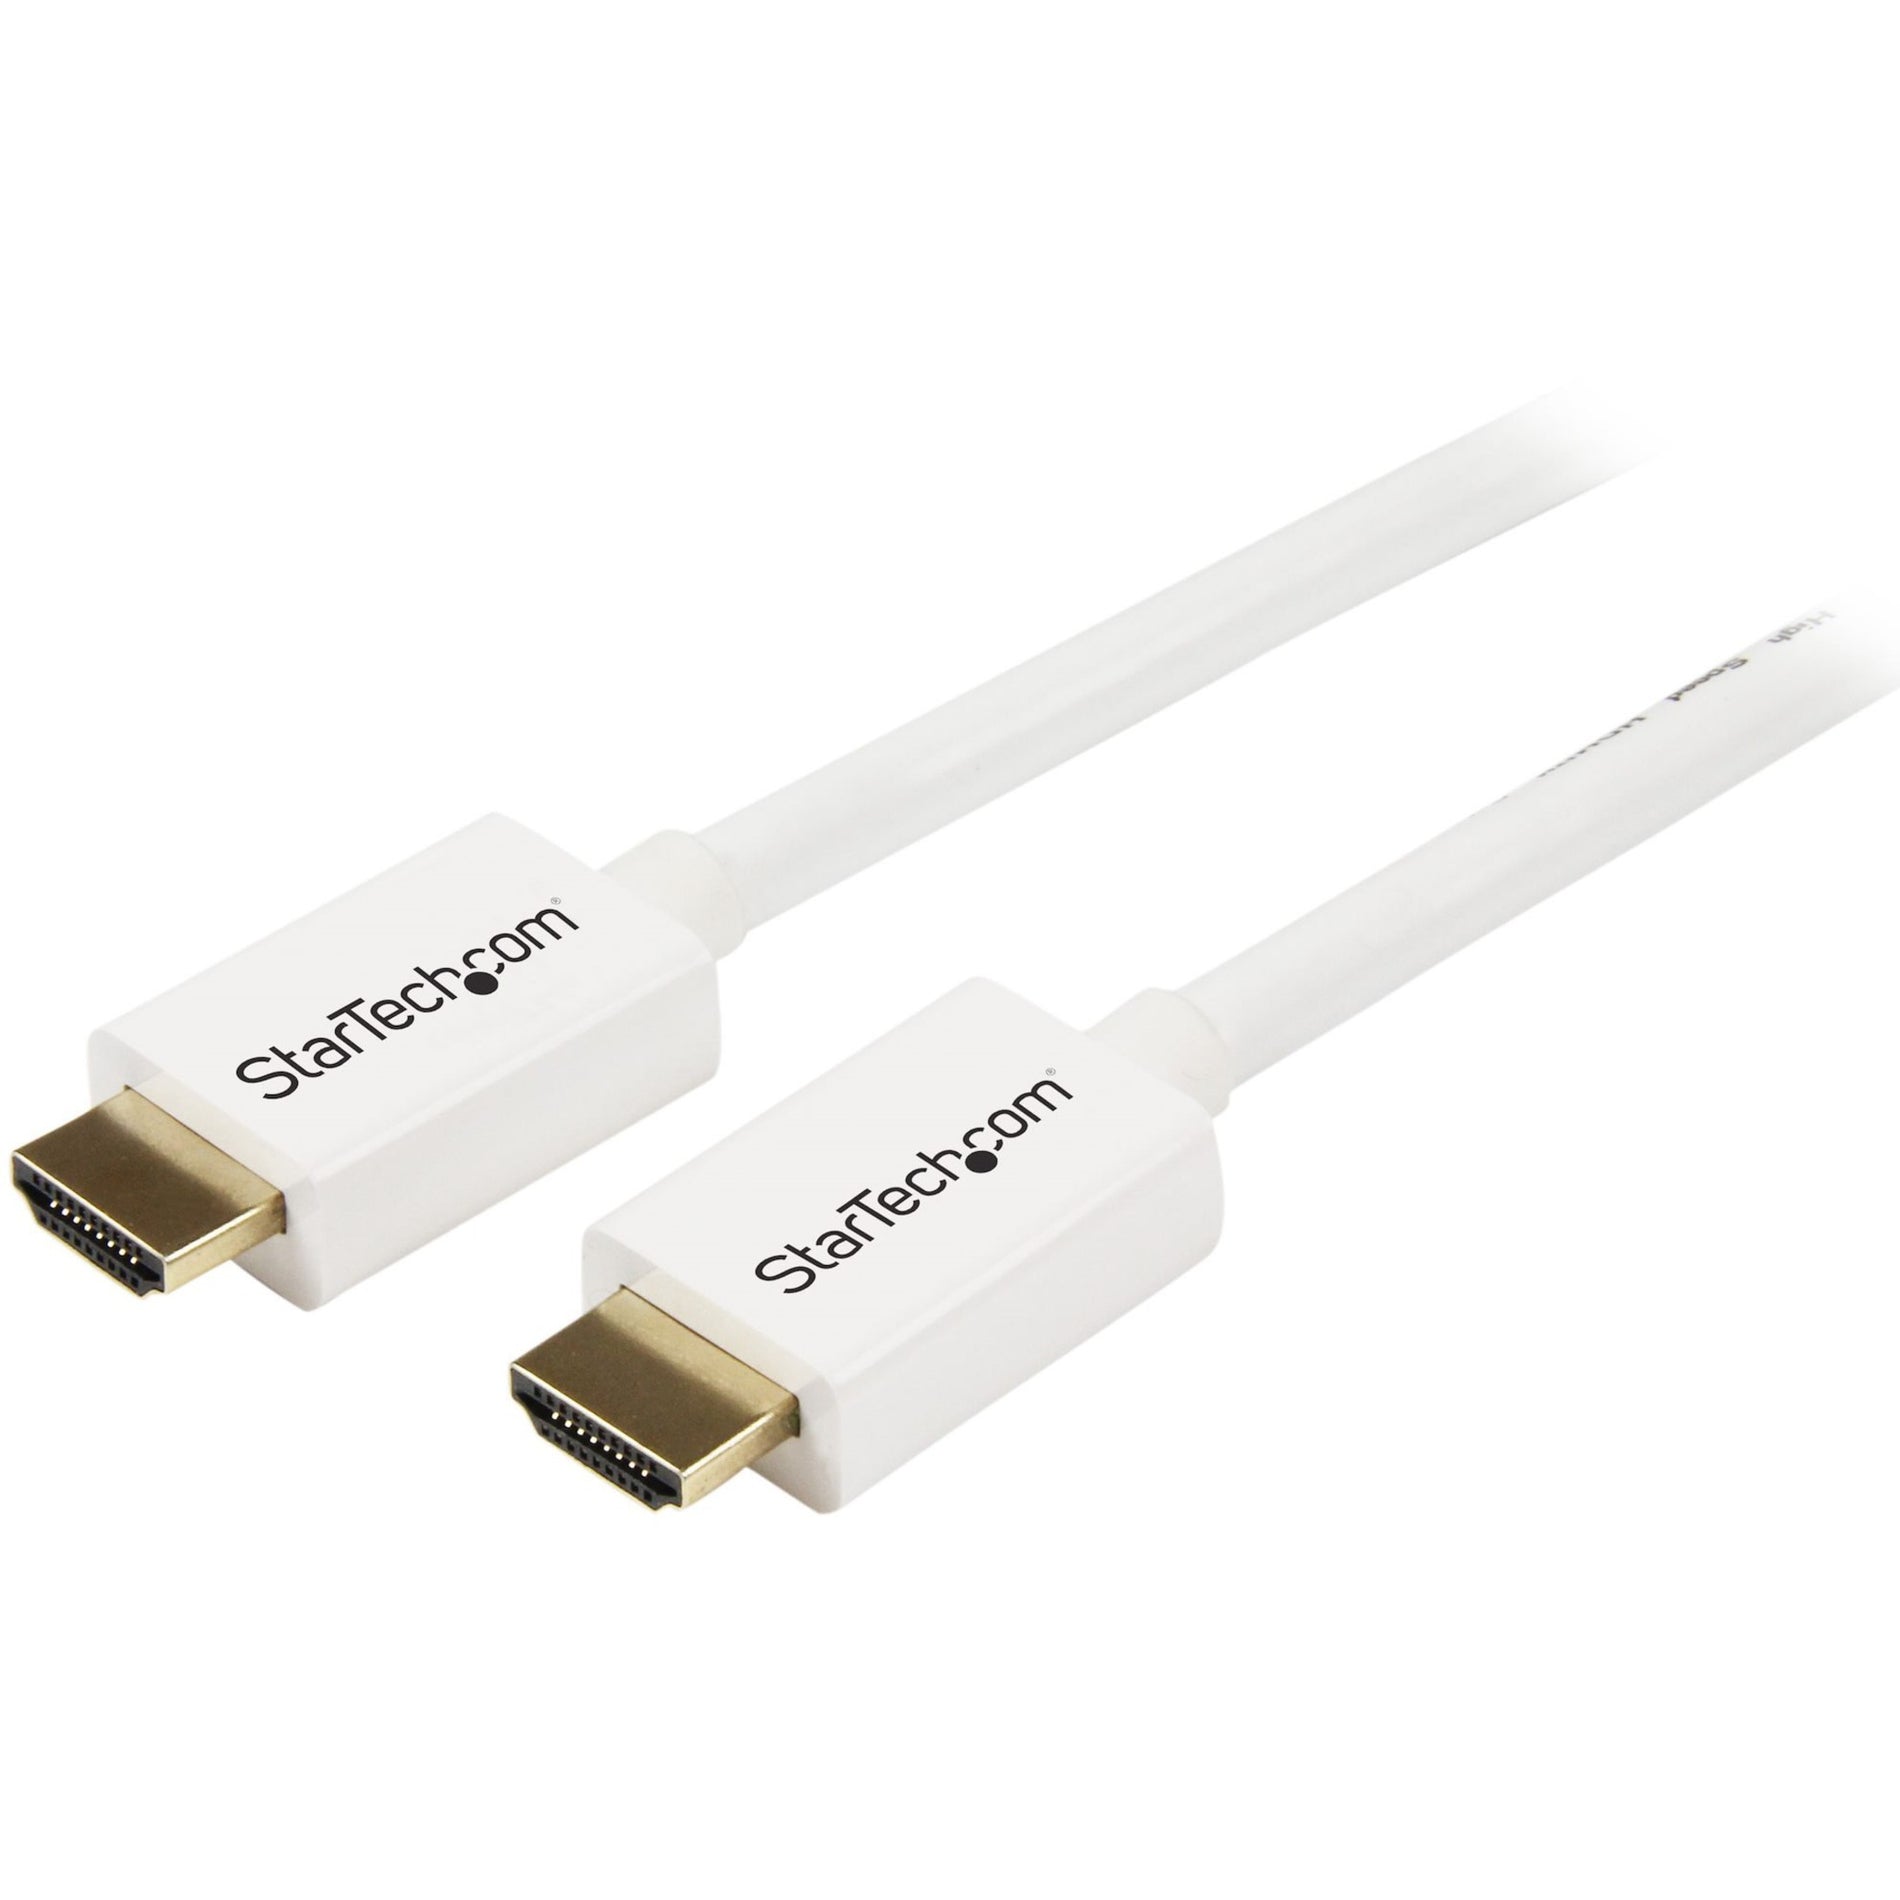 スタートゥech.com HD3MM3MW ホワイト CL3 壁内 高速 HDMI ケーブル - HDMI to HDMI - M/M、9.84 フィート、腐食防止、ゴールドメッキコネクタ、10.2 Gbit/s データ転送レート